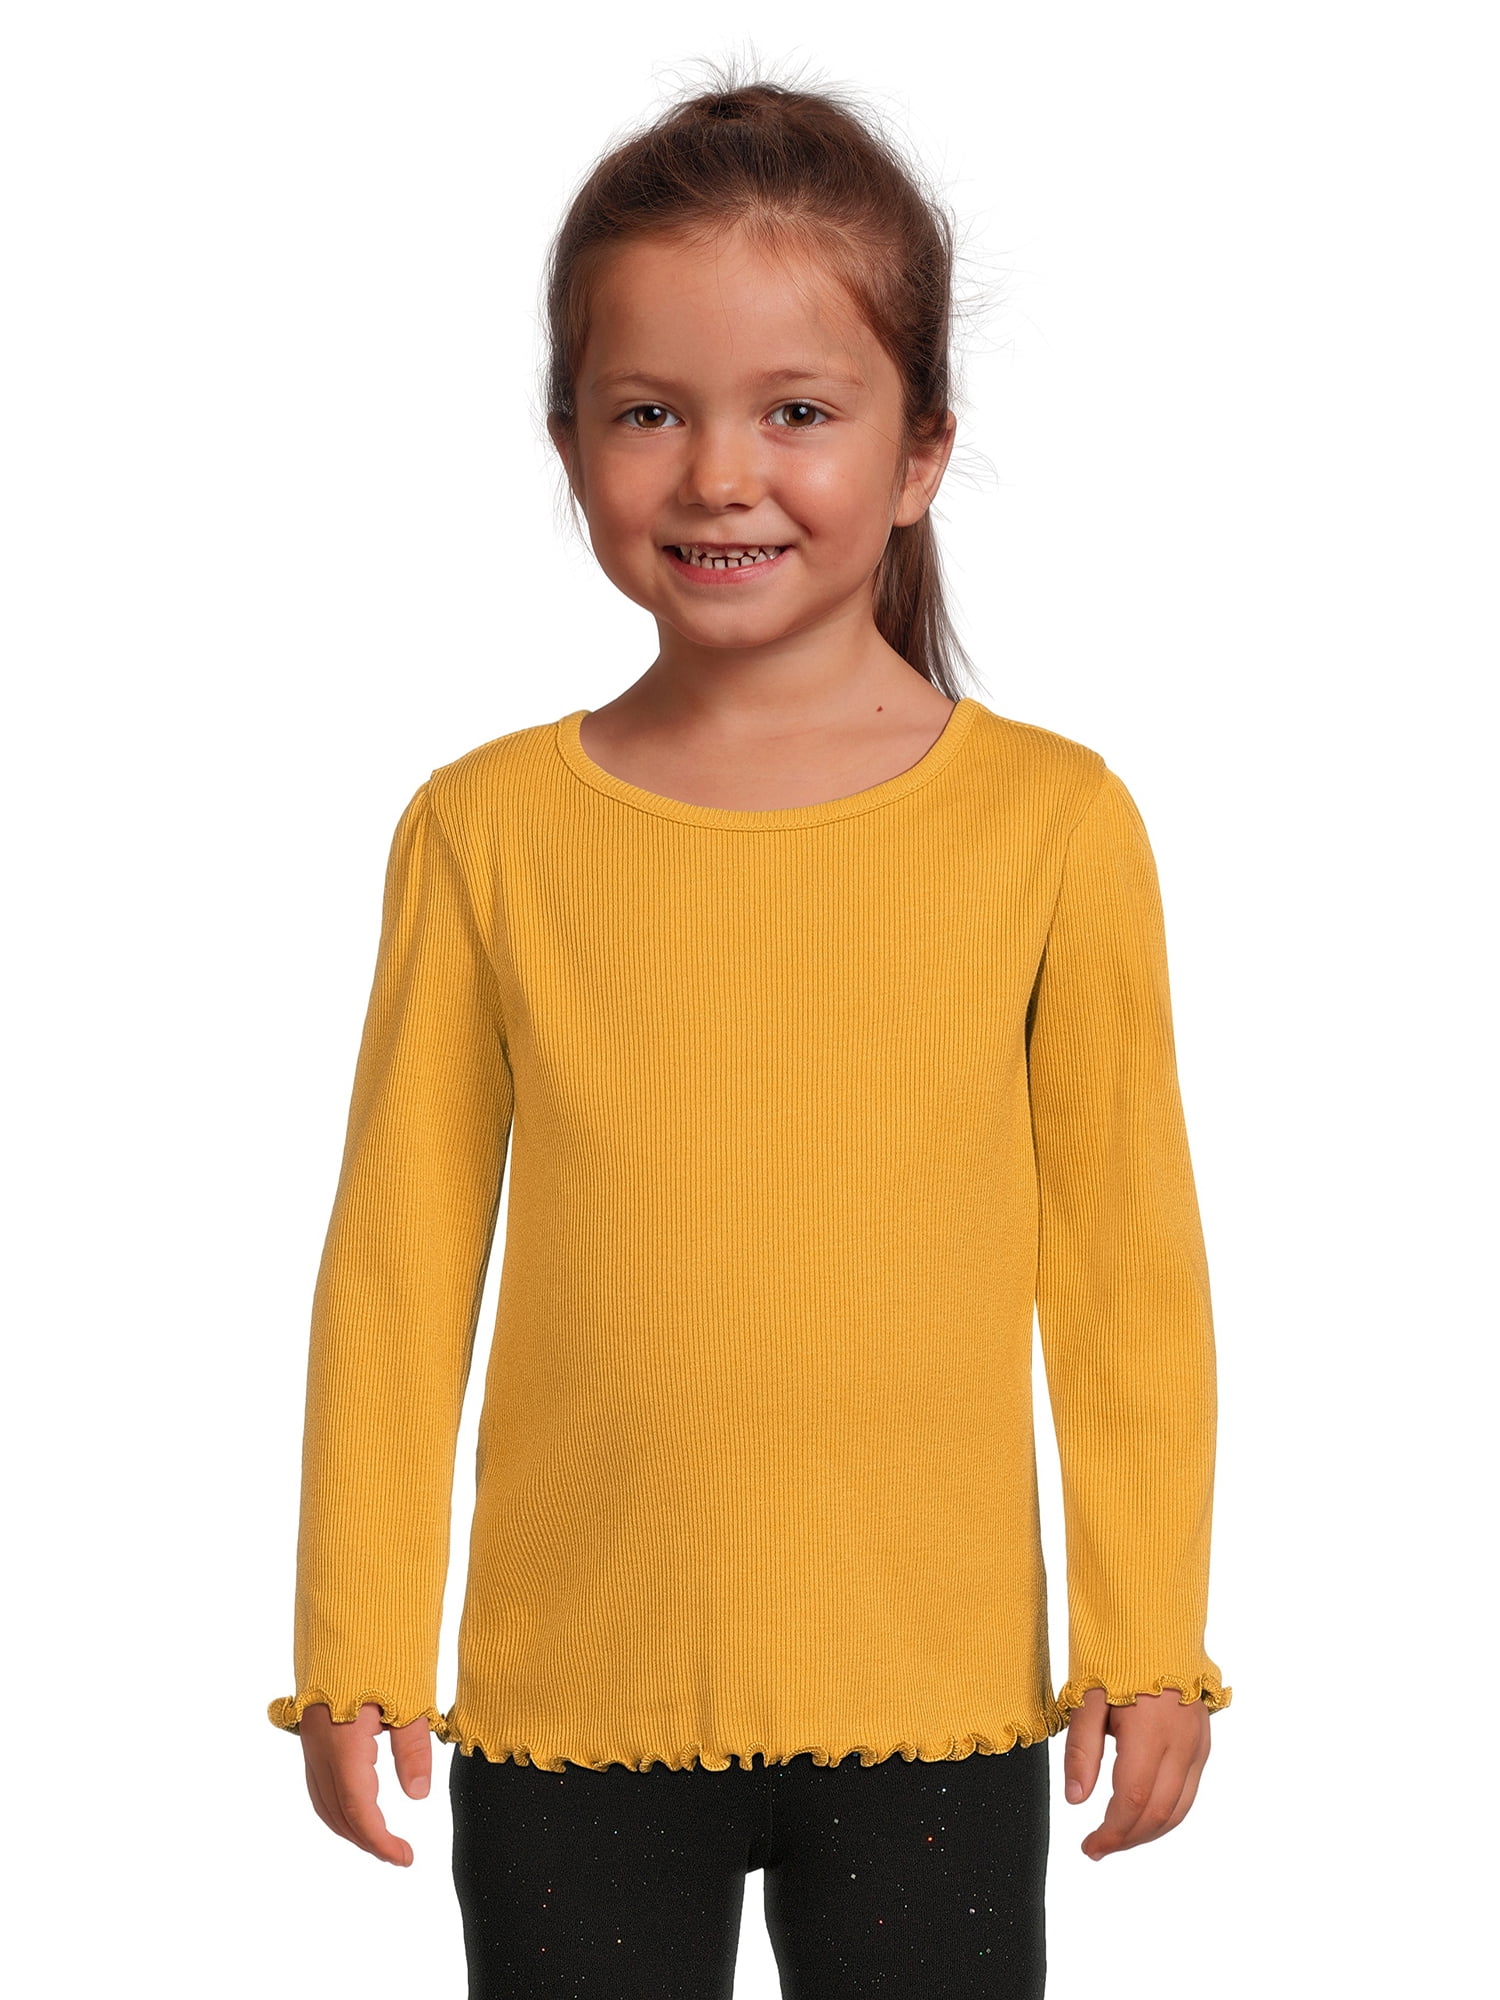 Garanimals Toddler Girl Ribbed Long Sleeve Top, Sizes 12M-5T